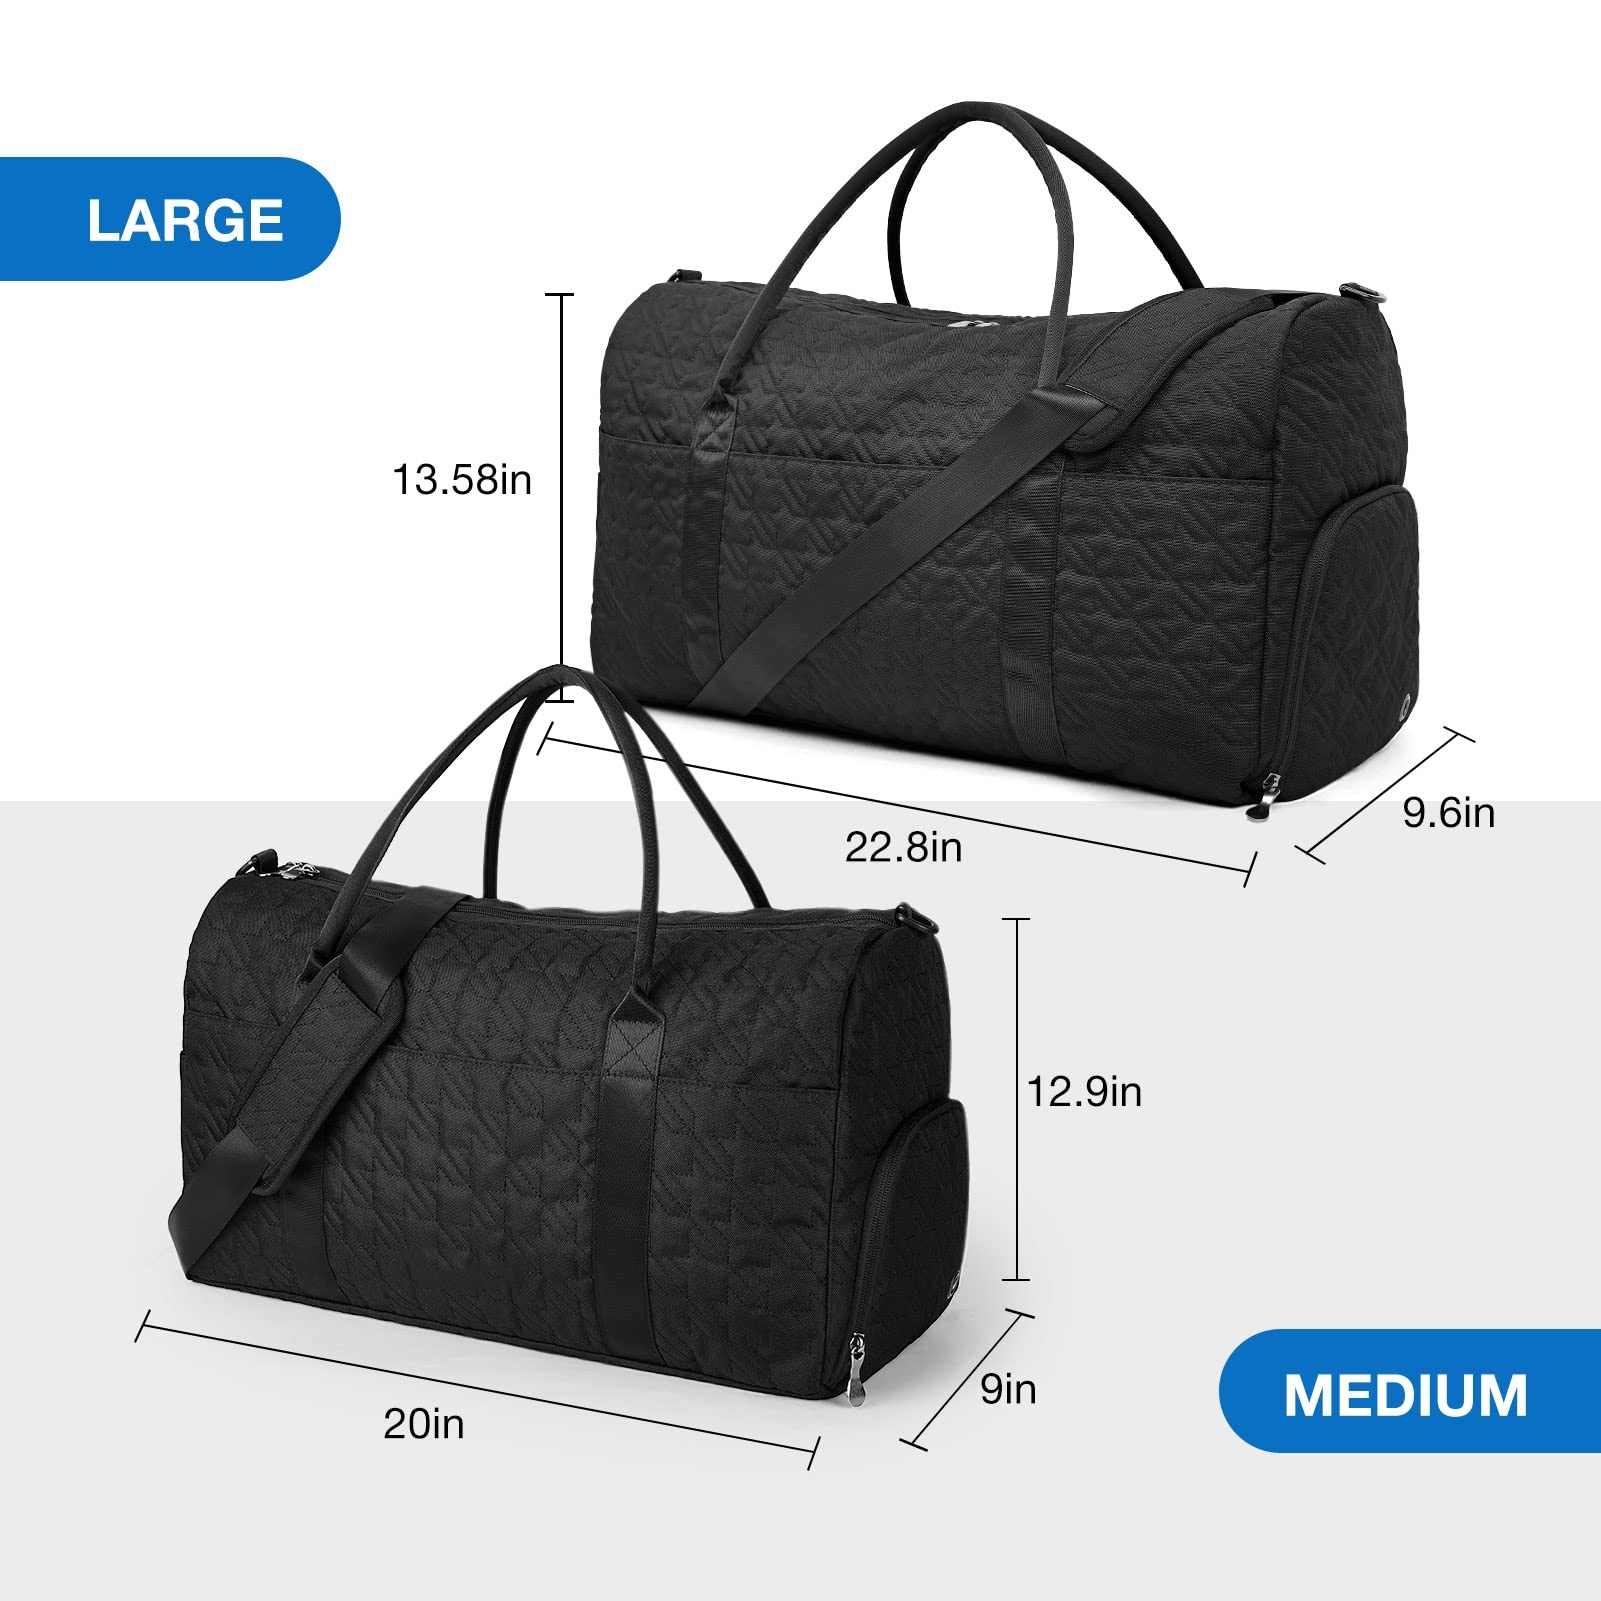 50L Large Travel Duffle Bag Wholesale Product Details 